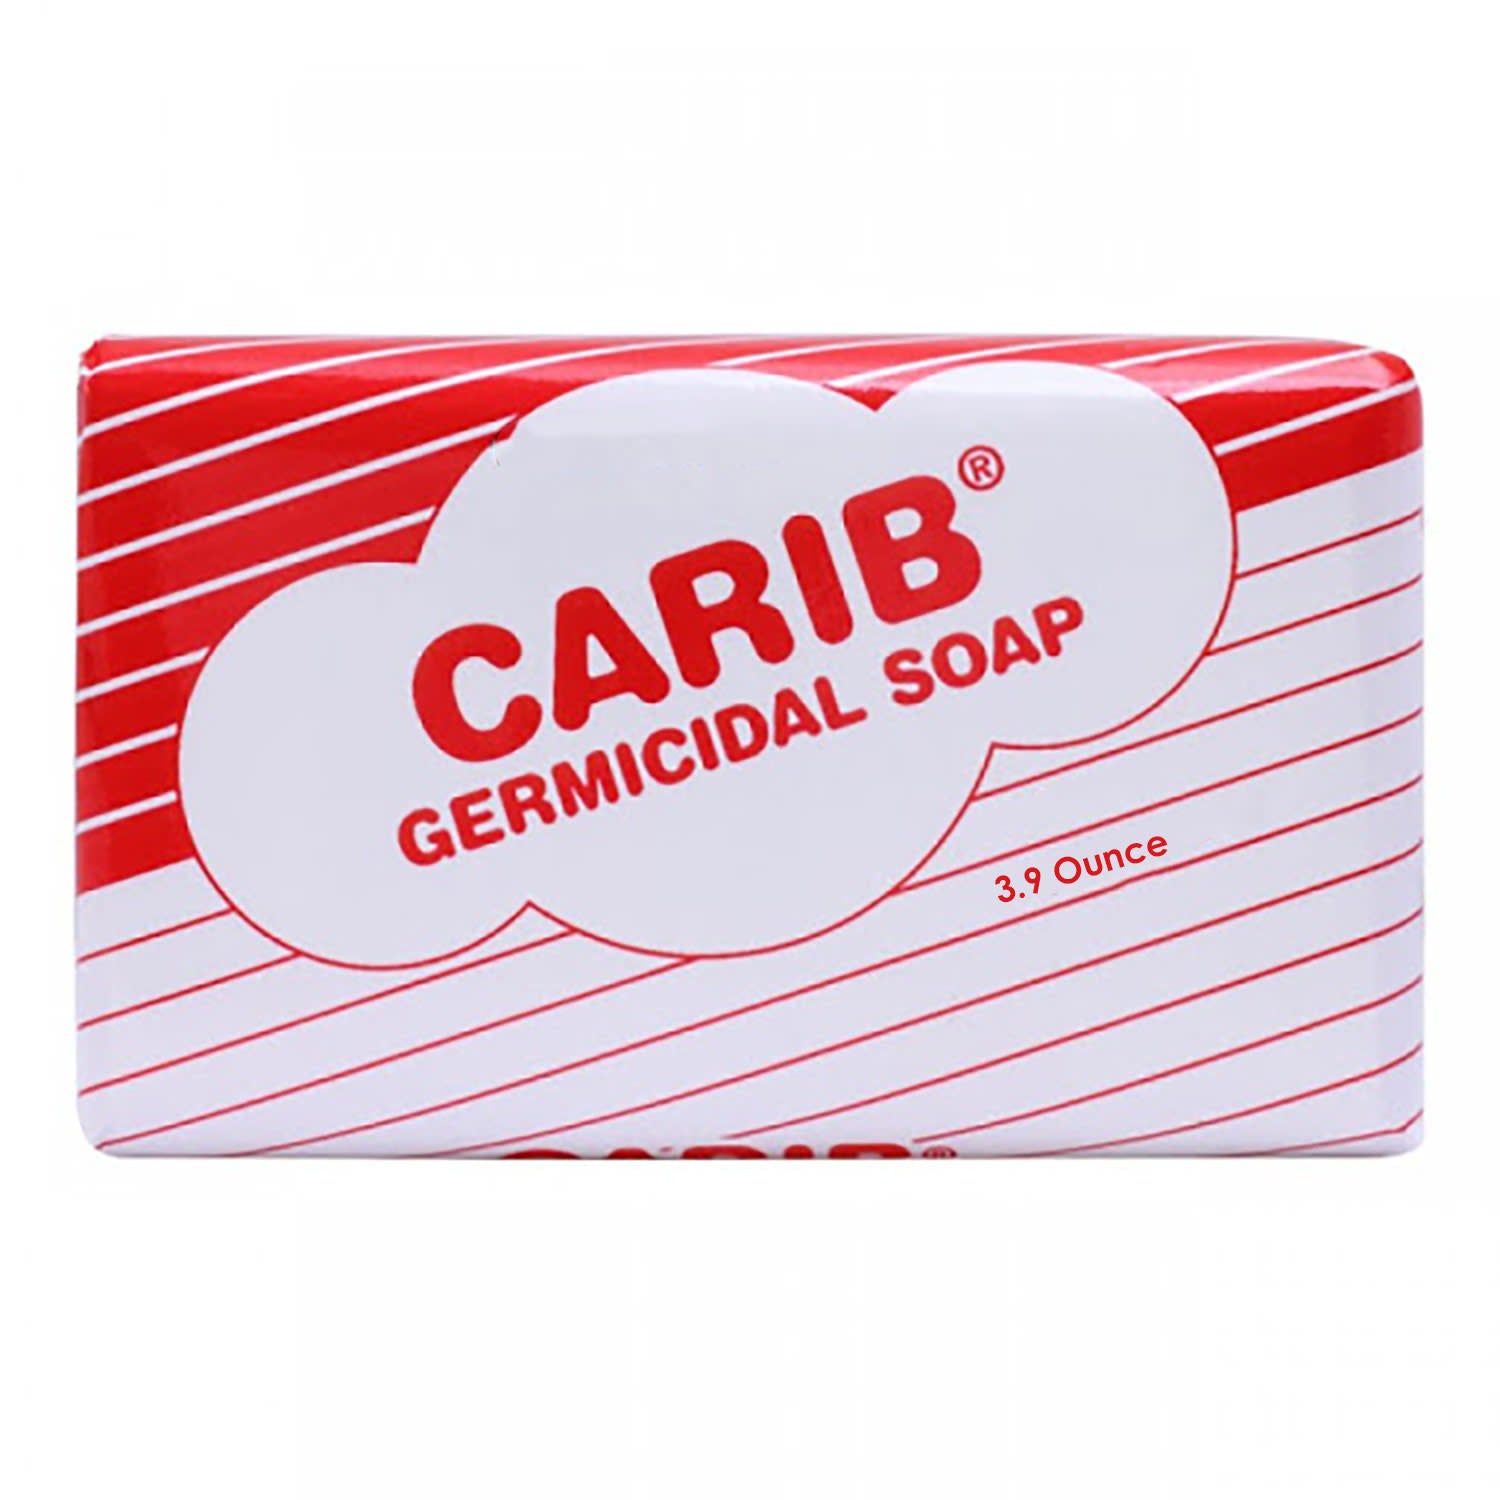 Carib Carbolic Germicidal Soap 125g